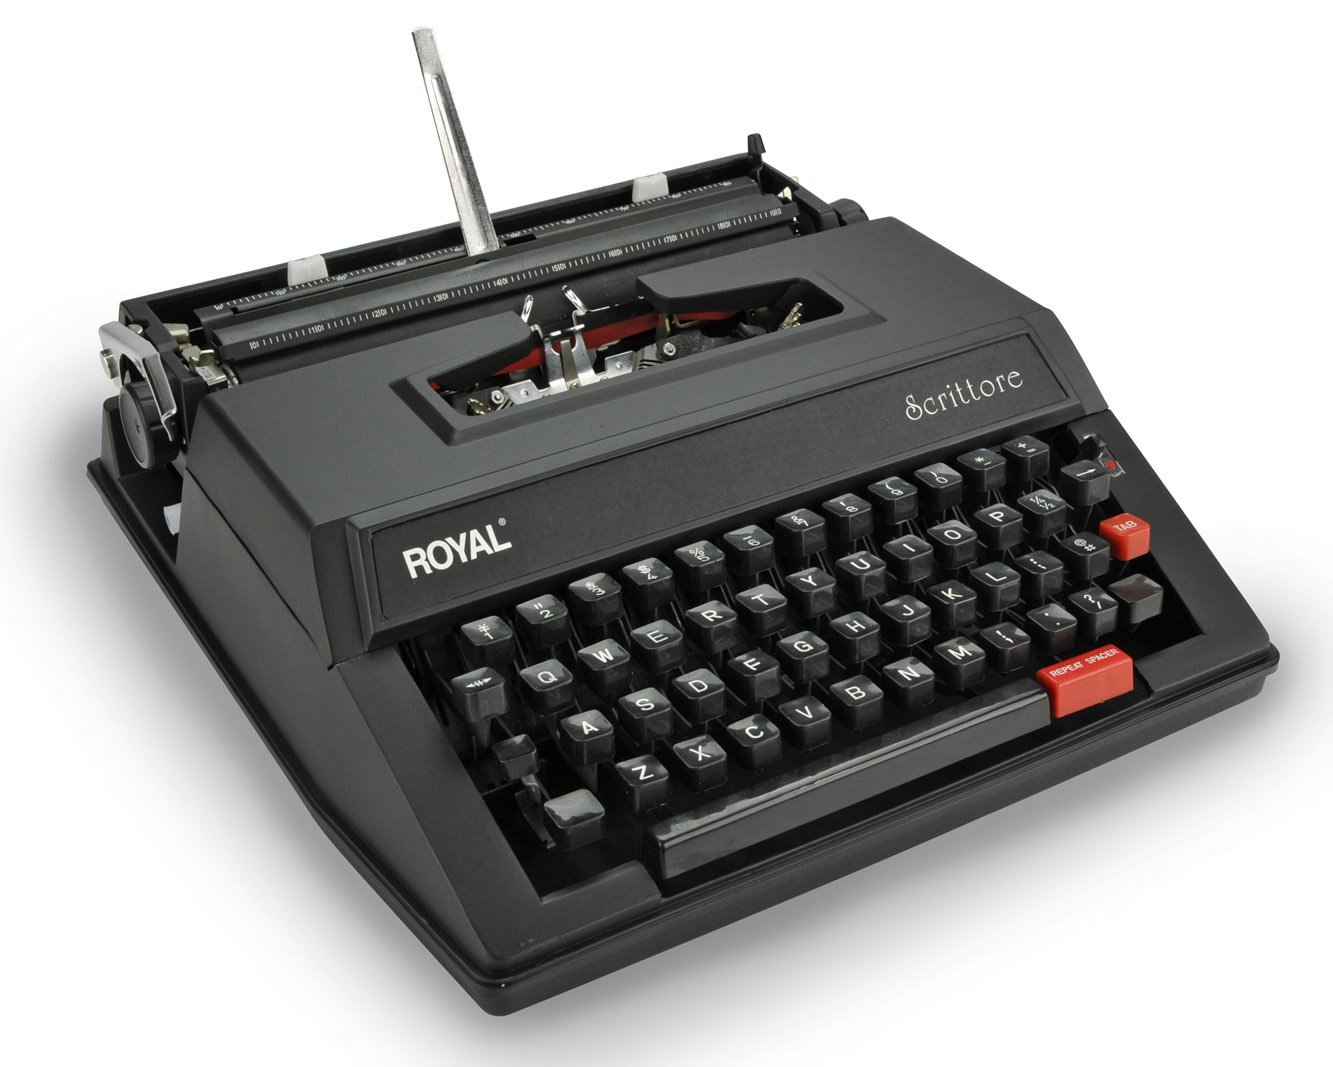 Royal Portable Manual Typewriter User Manual